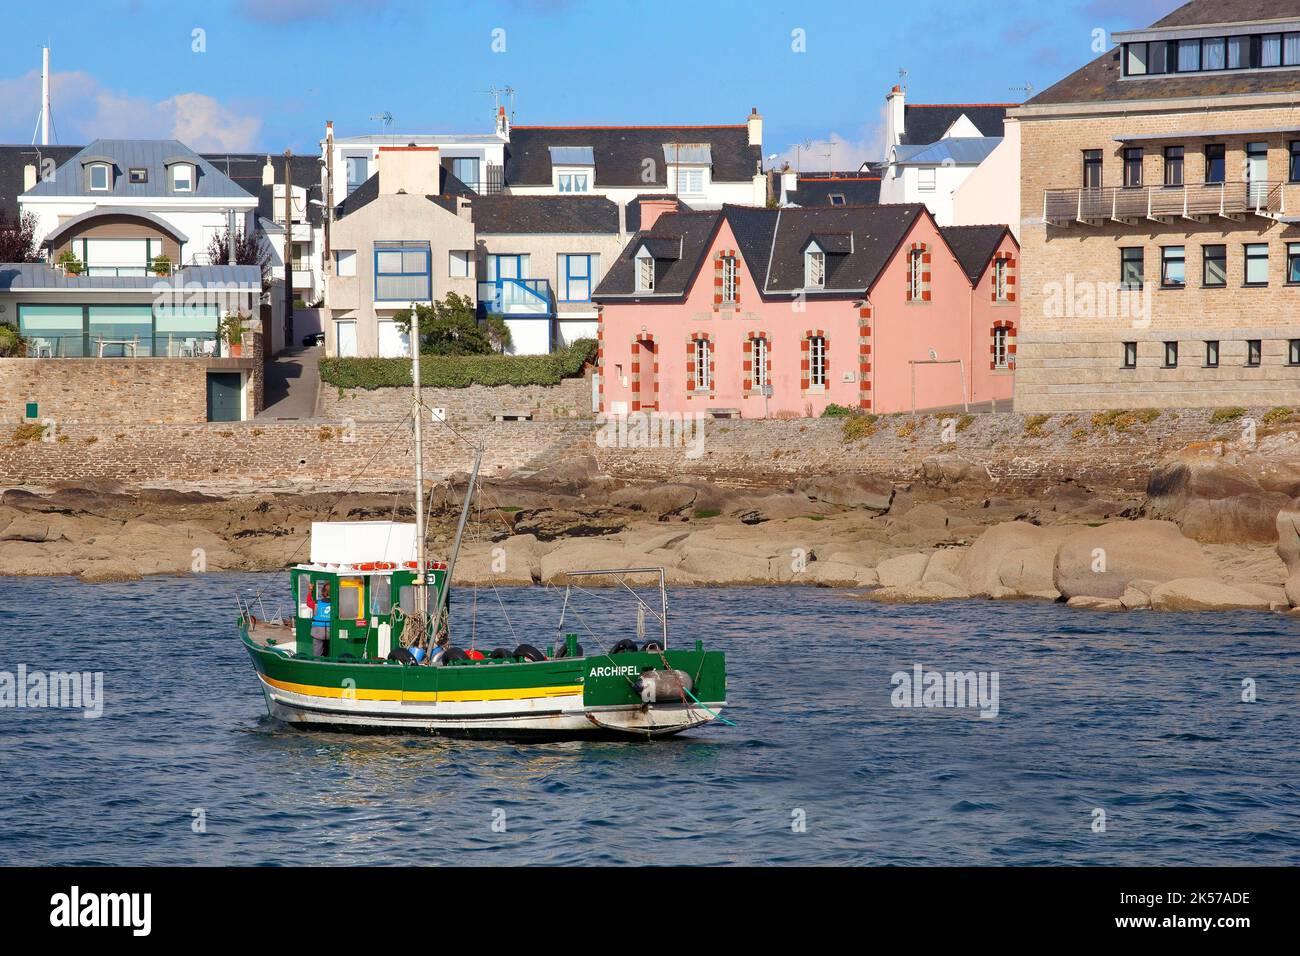 Frankreich, Finistère (29), bateau de pêche sur le Port de Concarneau, la Ville Close, cité fortifiée des XVe et XVIe siècles remaniée par Vauban au XVIie siècle Stockfoto